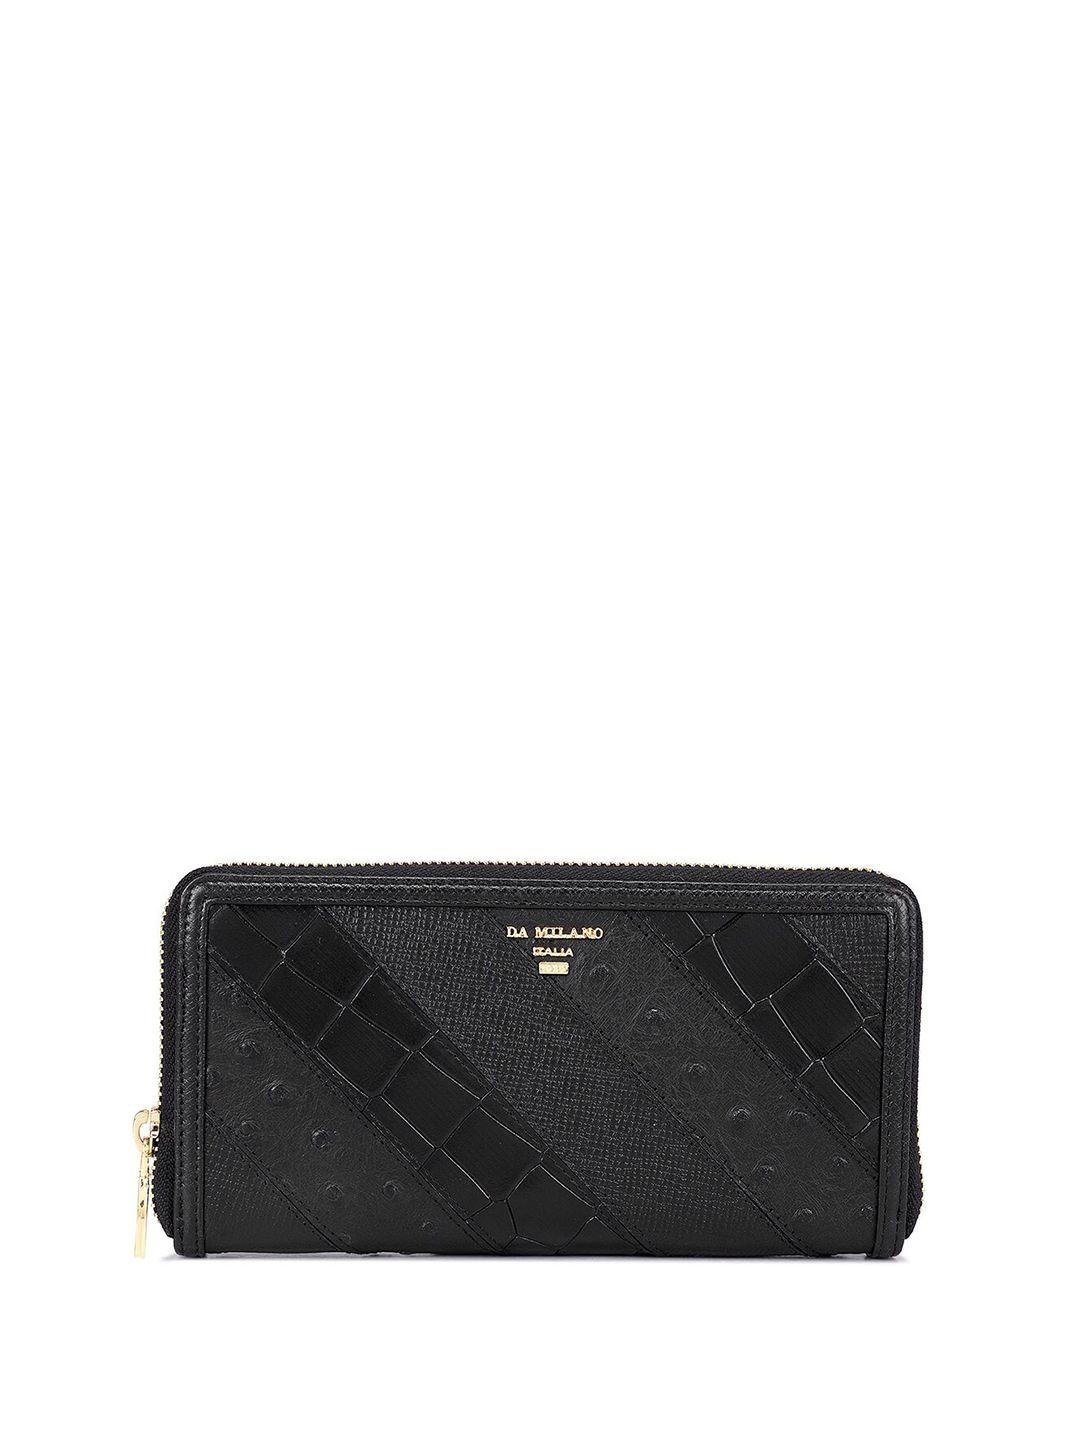 da milano womentextured leather zip around wallet